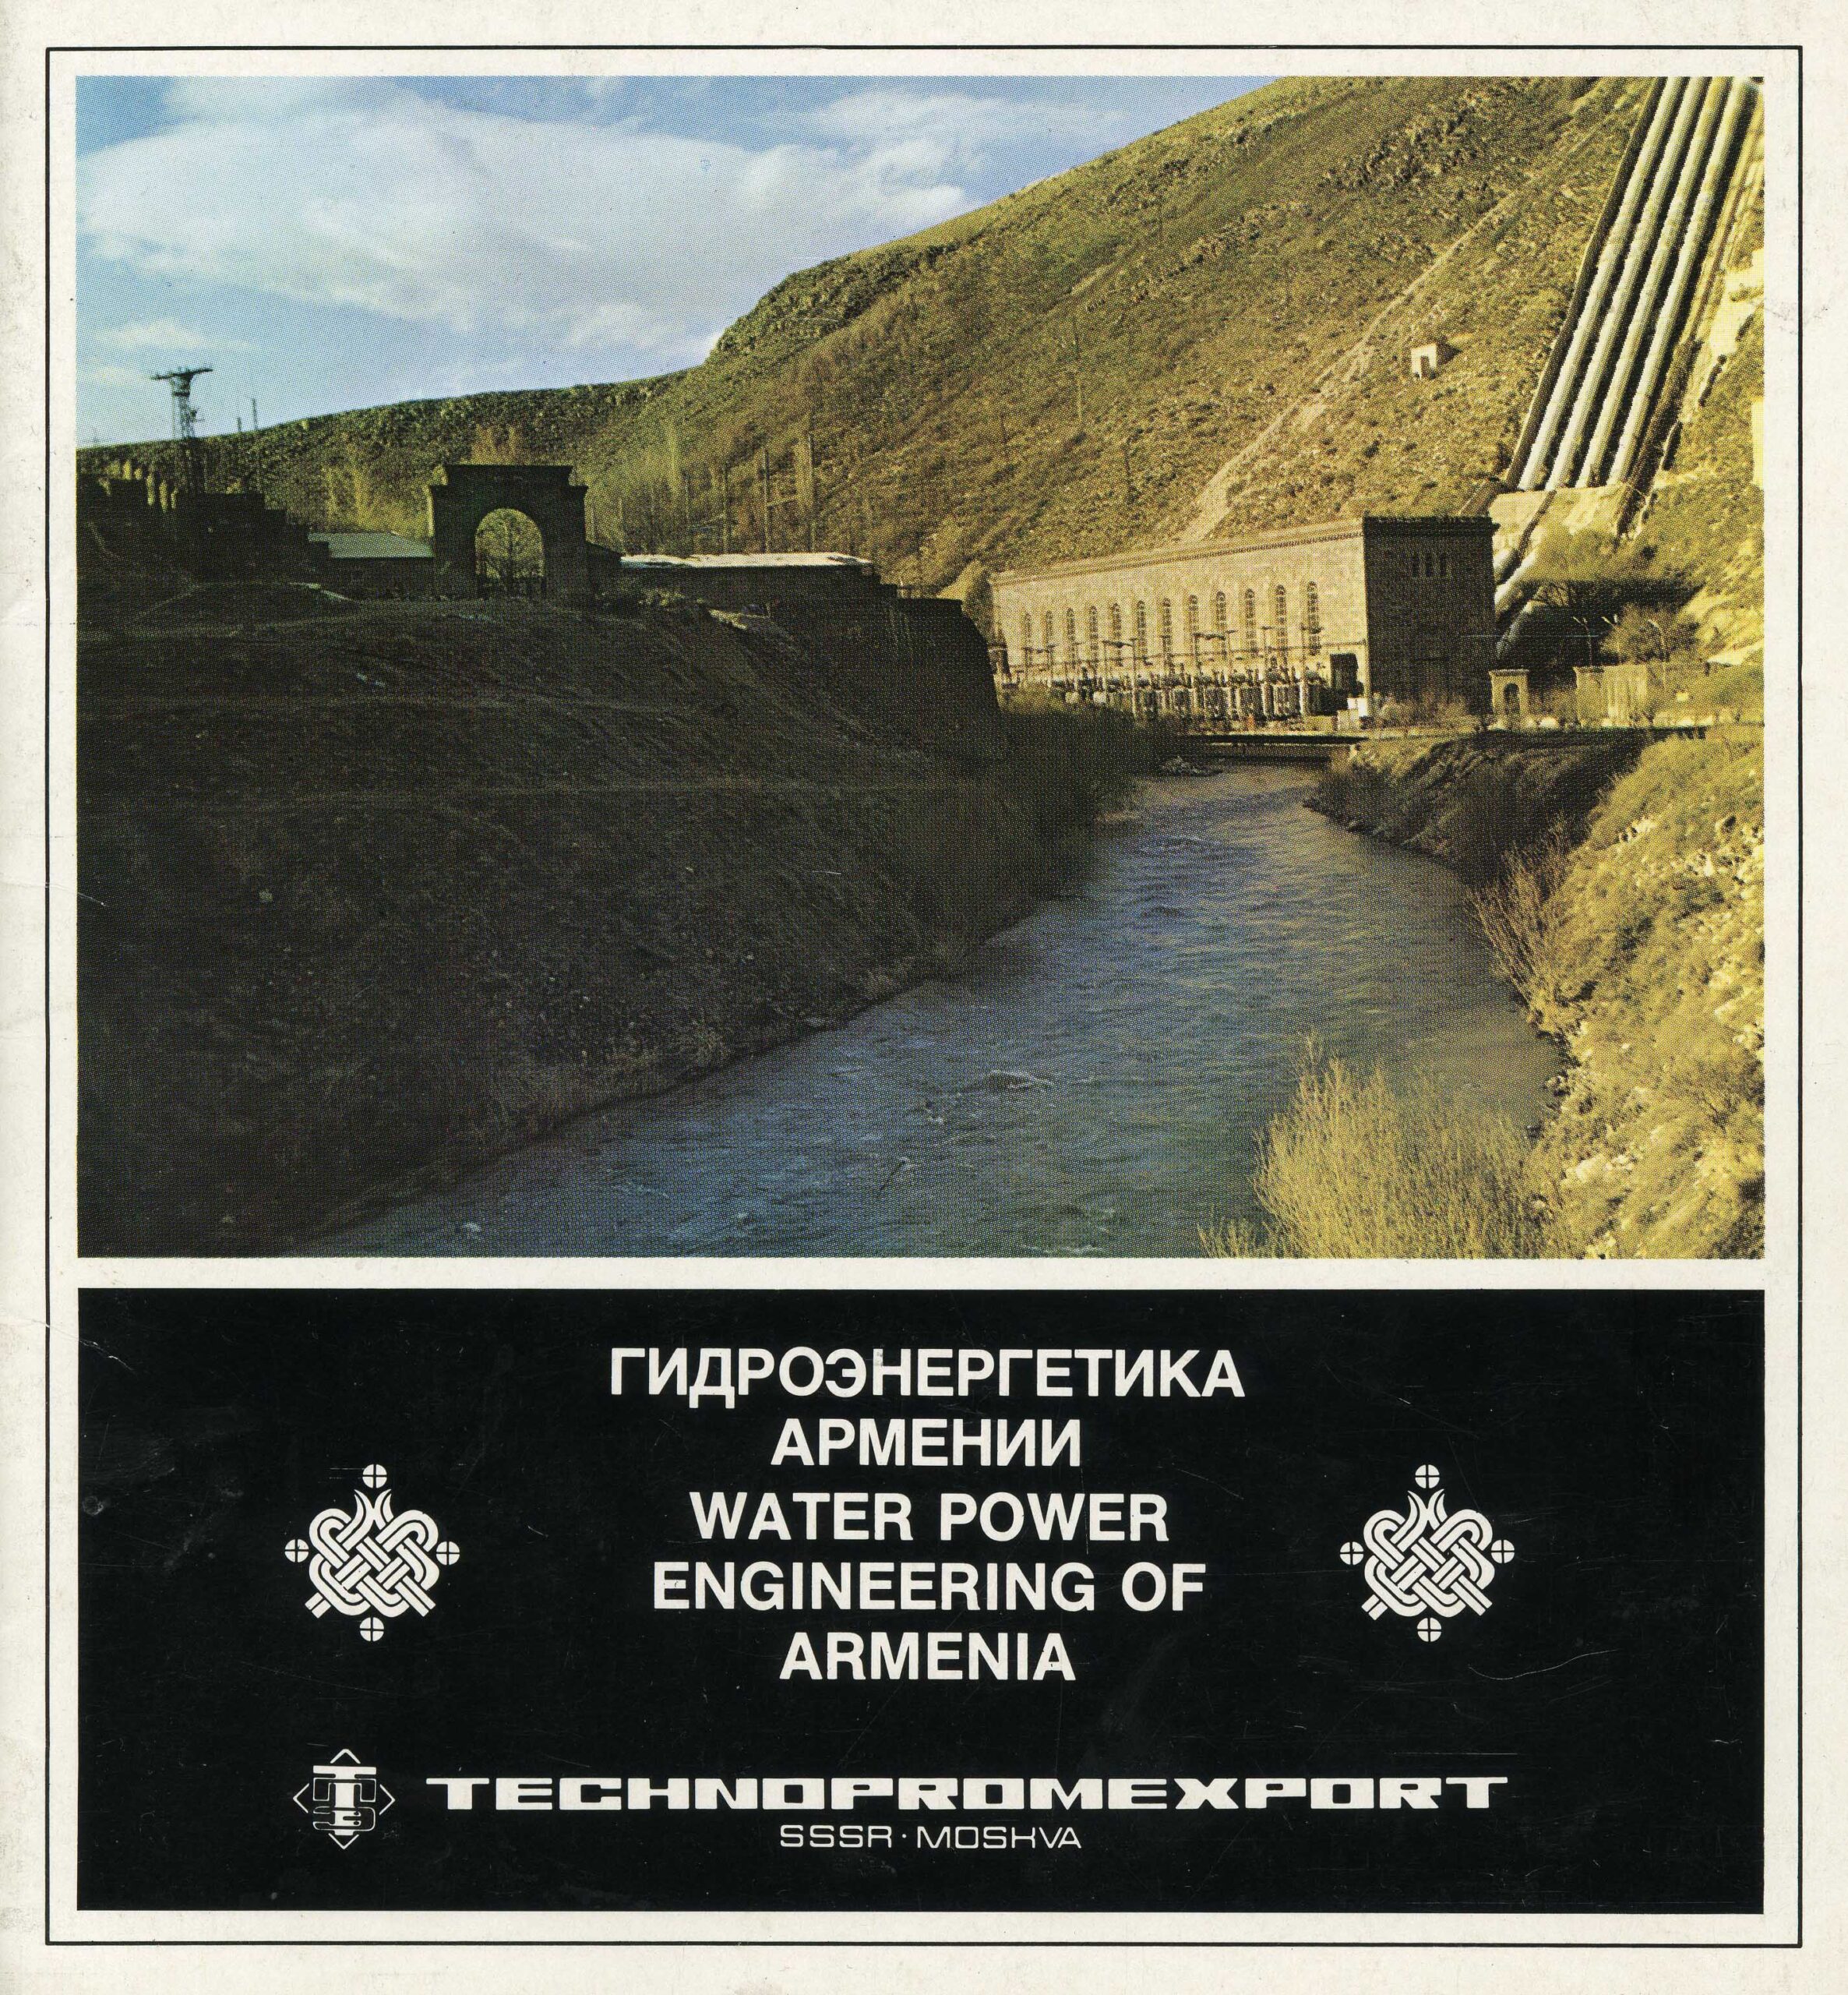 Արգել ՀԷԿ-ի լուսանկարը «Гидроэнергетика Армении» գրքույկի շապիկին